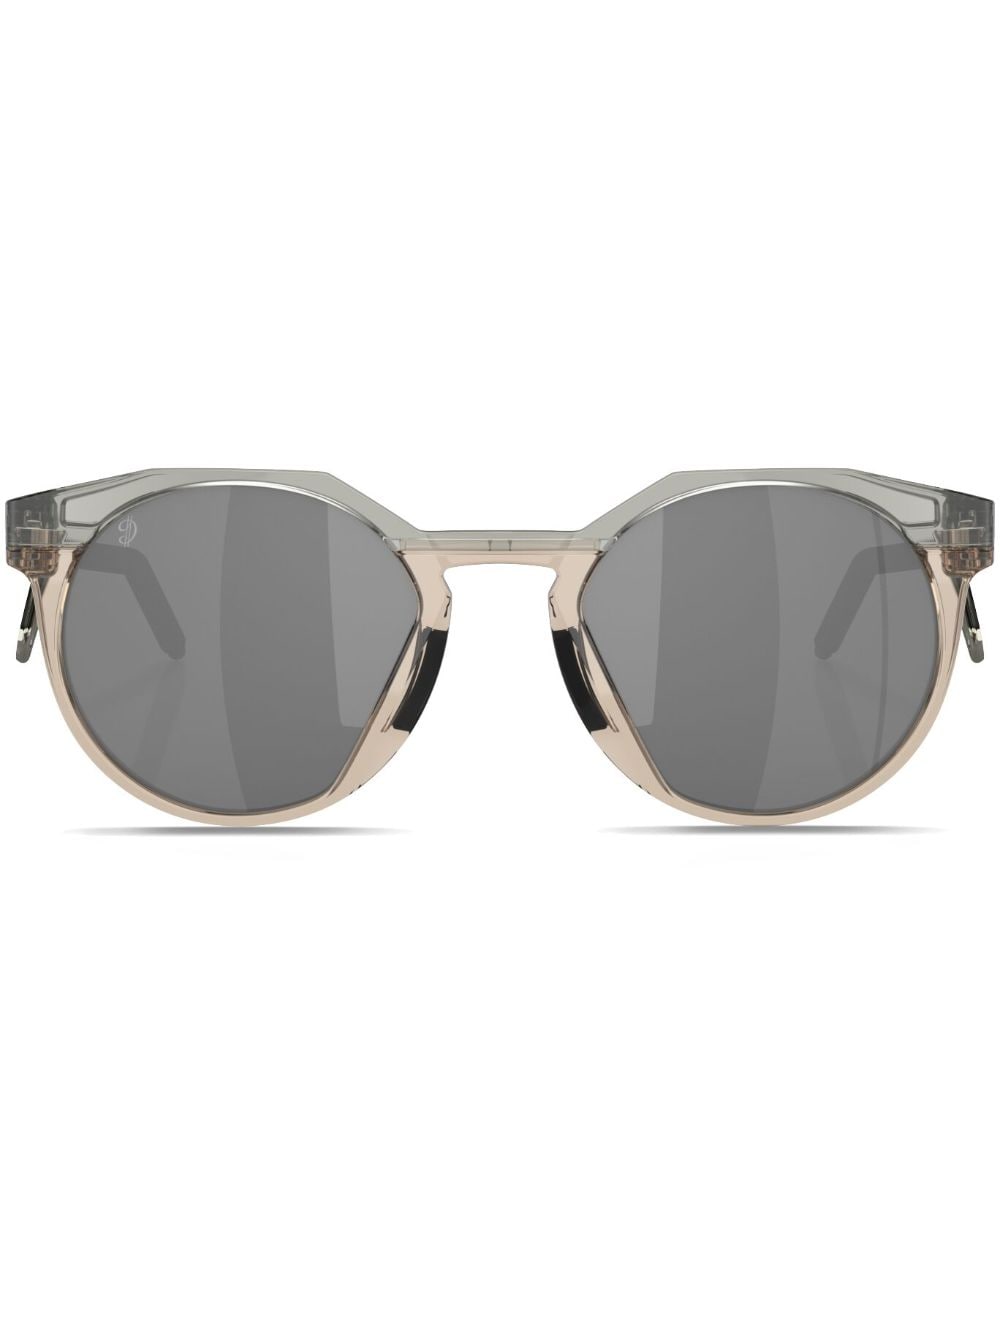 Oakley x Damian Lillard HSTN round-frame sunglasses - Grey von Oakley